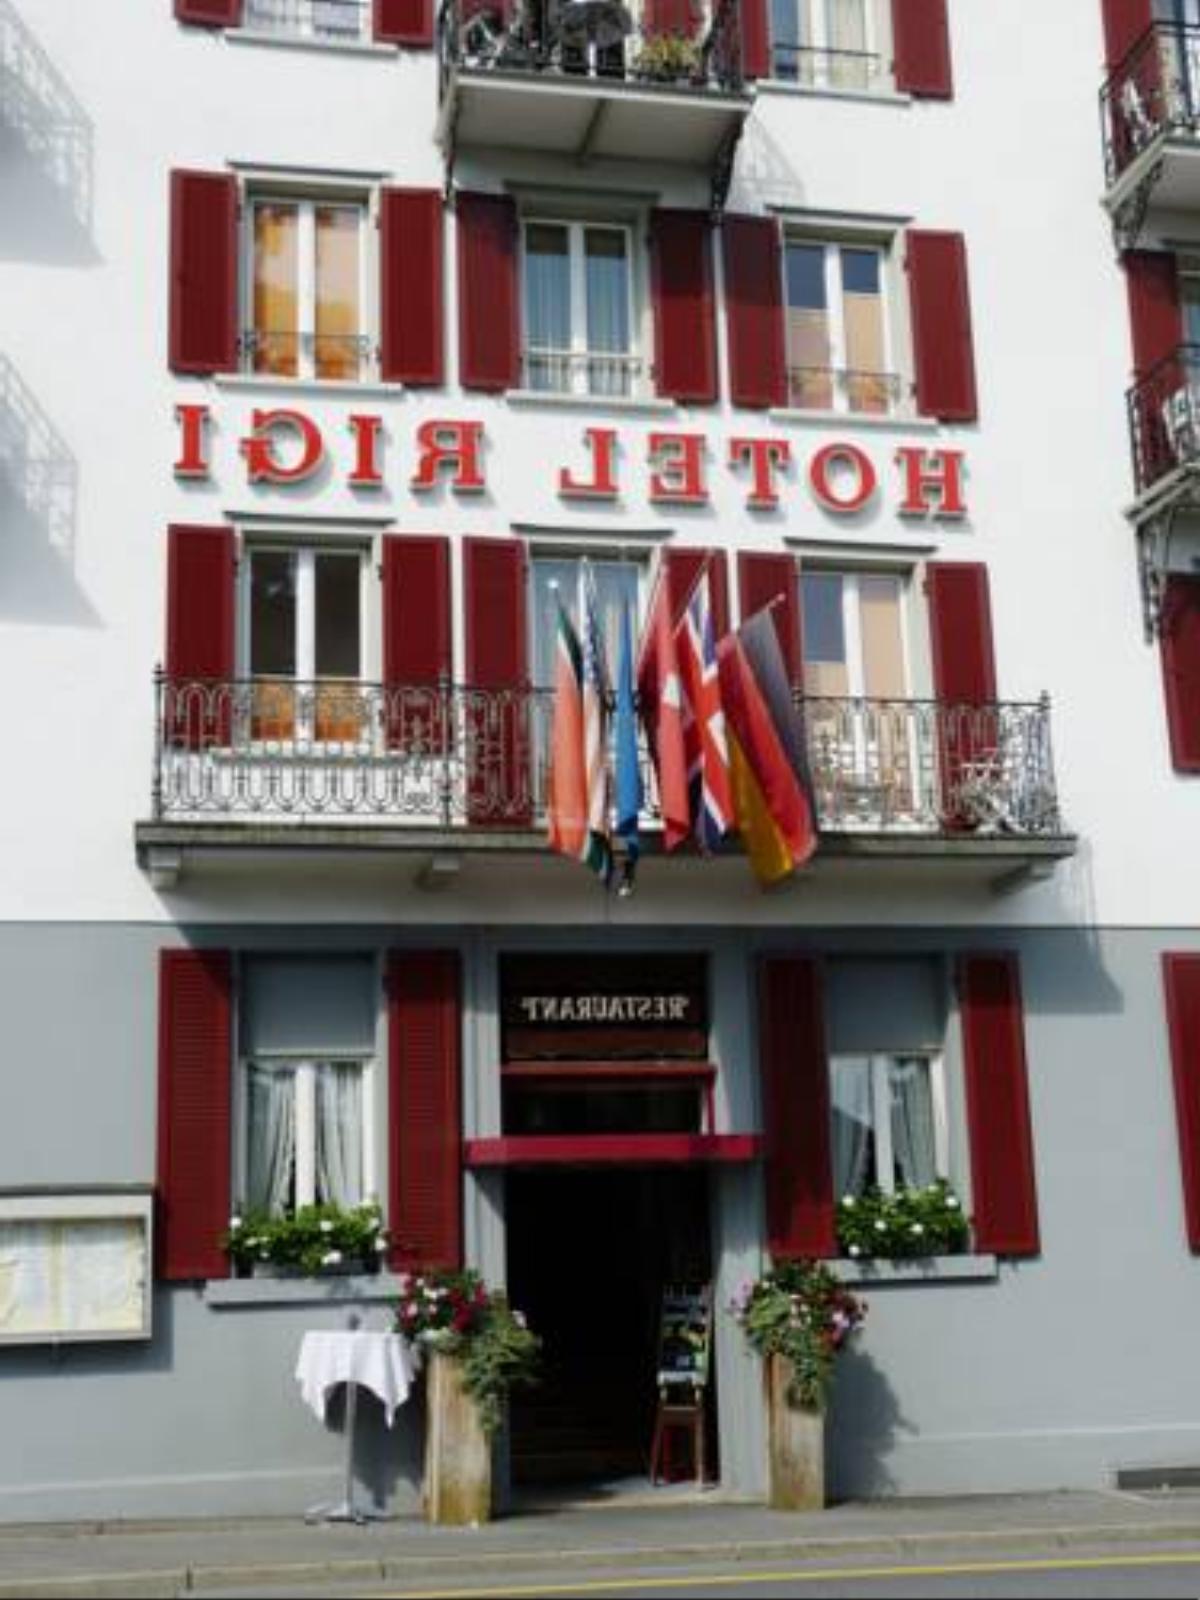 Hotel Rigi Vitznau Hotel Vitznau Switzerland